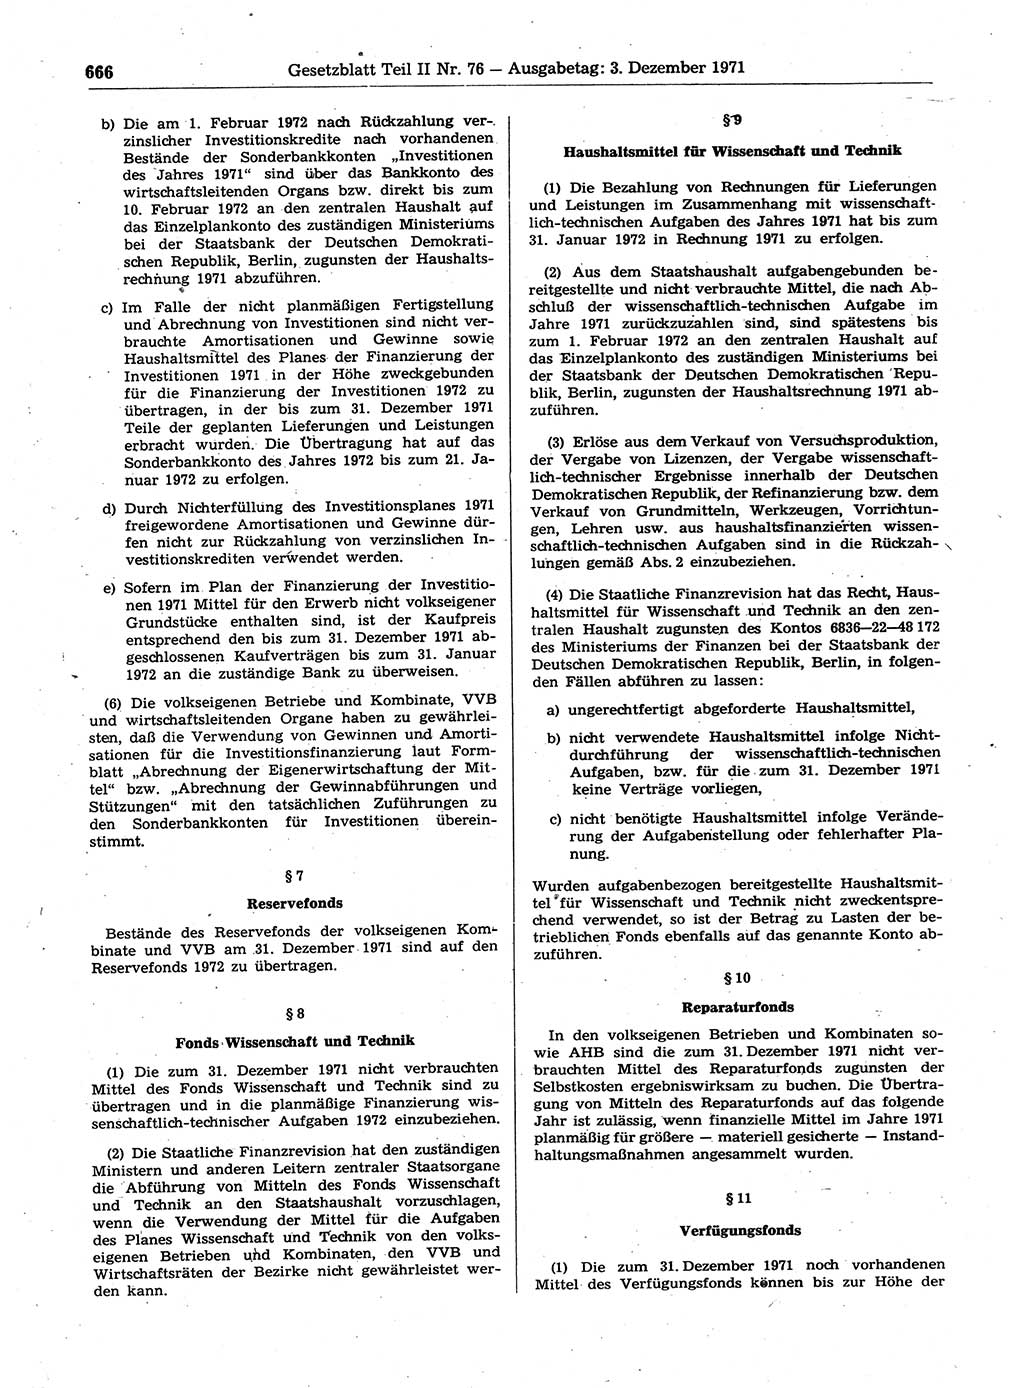 Gesetzblatt (GBl.) der Deutschen Demokratischen Republik (DDR) Teil ⅠⅠ 1971, Seite 666 (GBl. DDR ⅠⅠ 1971, S. 666)